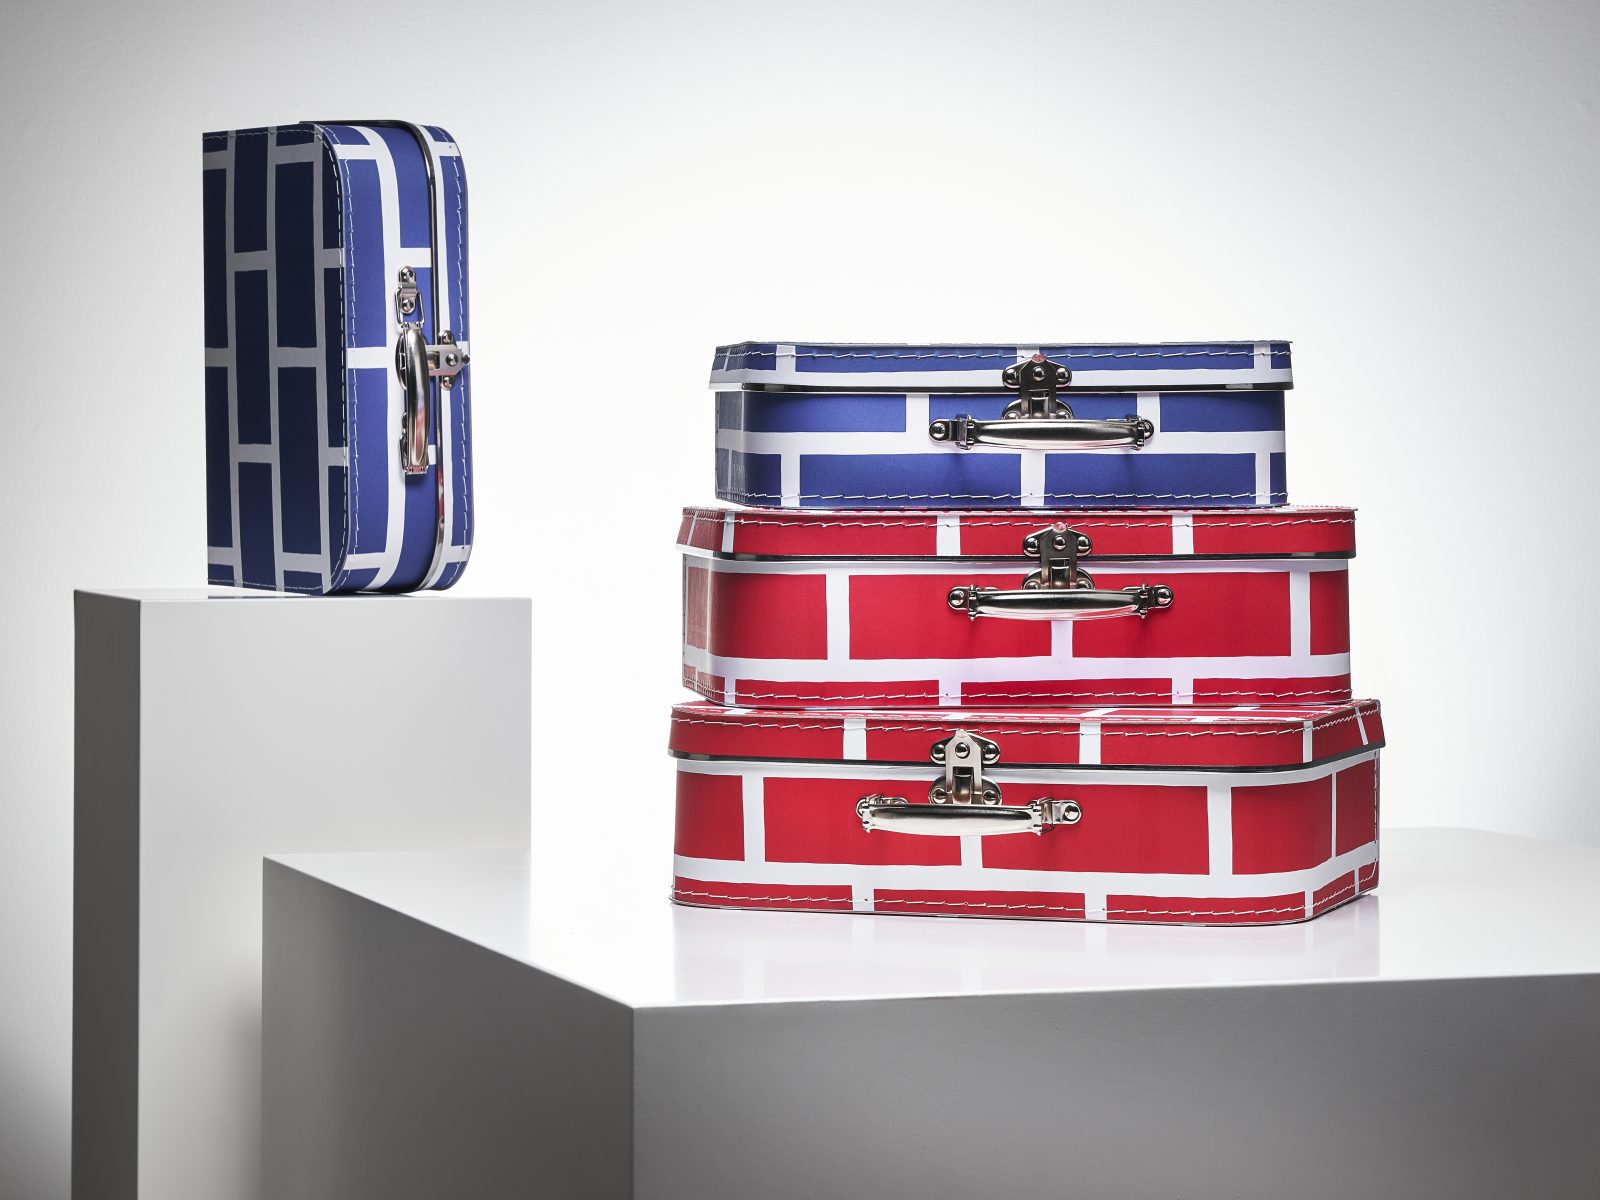 Verschieden große Koffer mit Mustern in Blau/Weiß und Rot/Weiß.